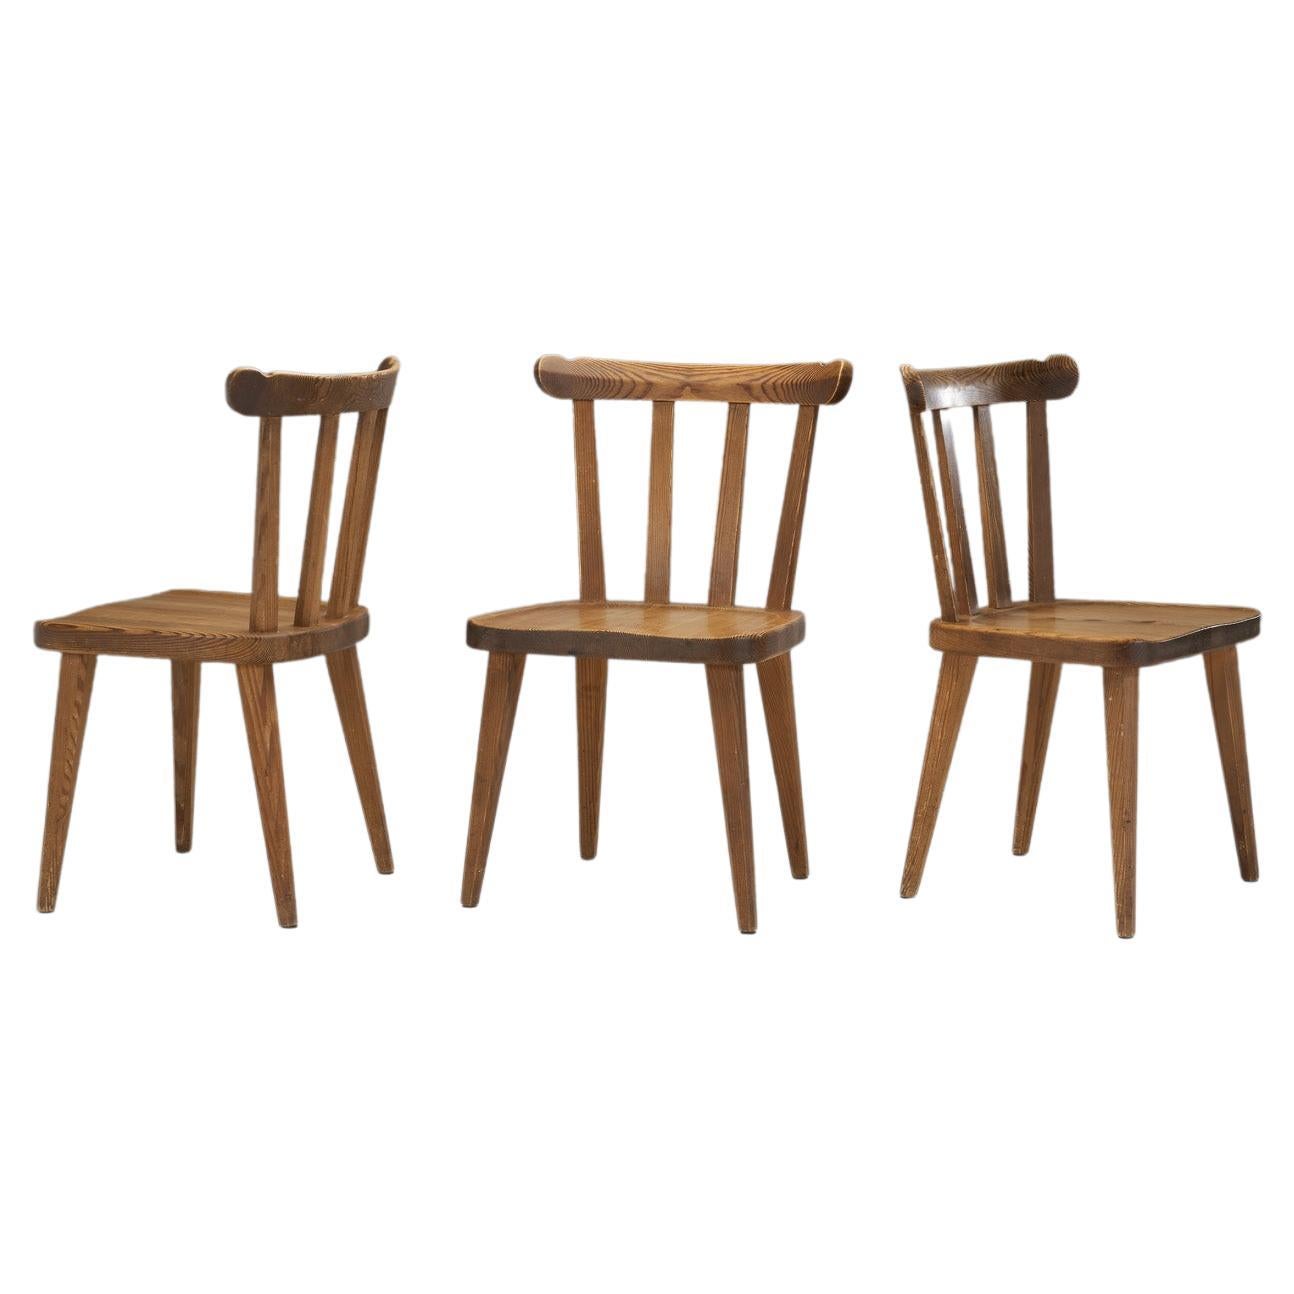 Nordiska Kompaniet Pine "Ekerö" Chairs, Sweden 1930s